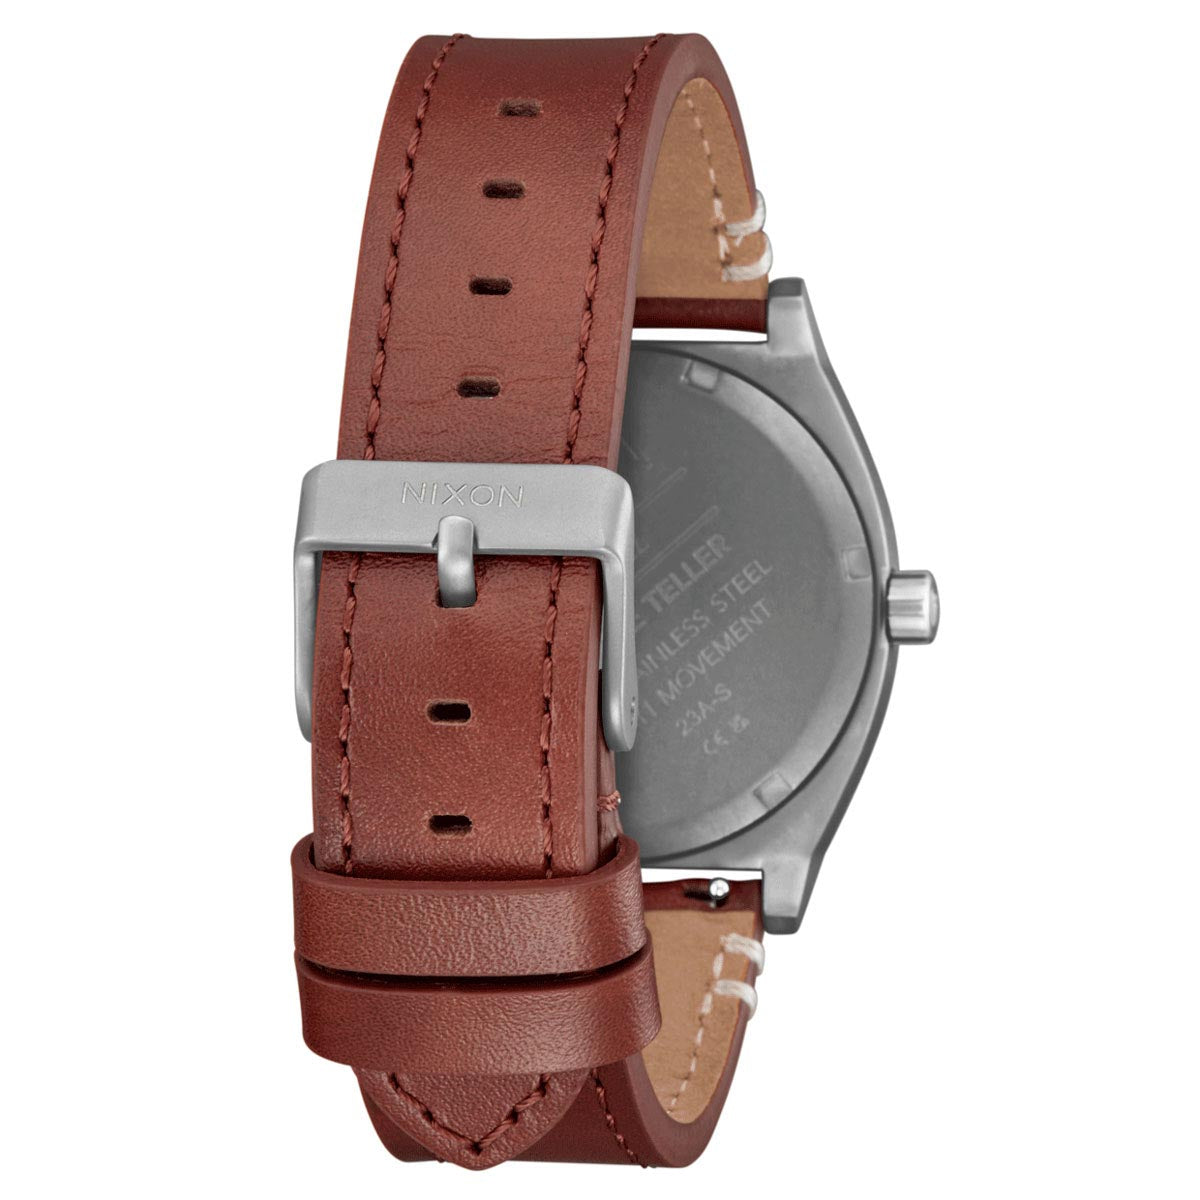 Nixon Time Teller Leather Watch - Light Gunmetal/Basalt/Sienna image 3